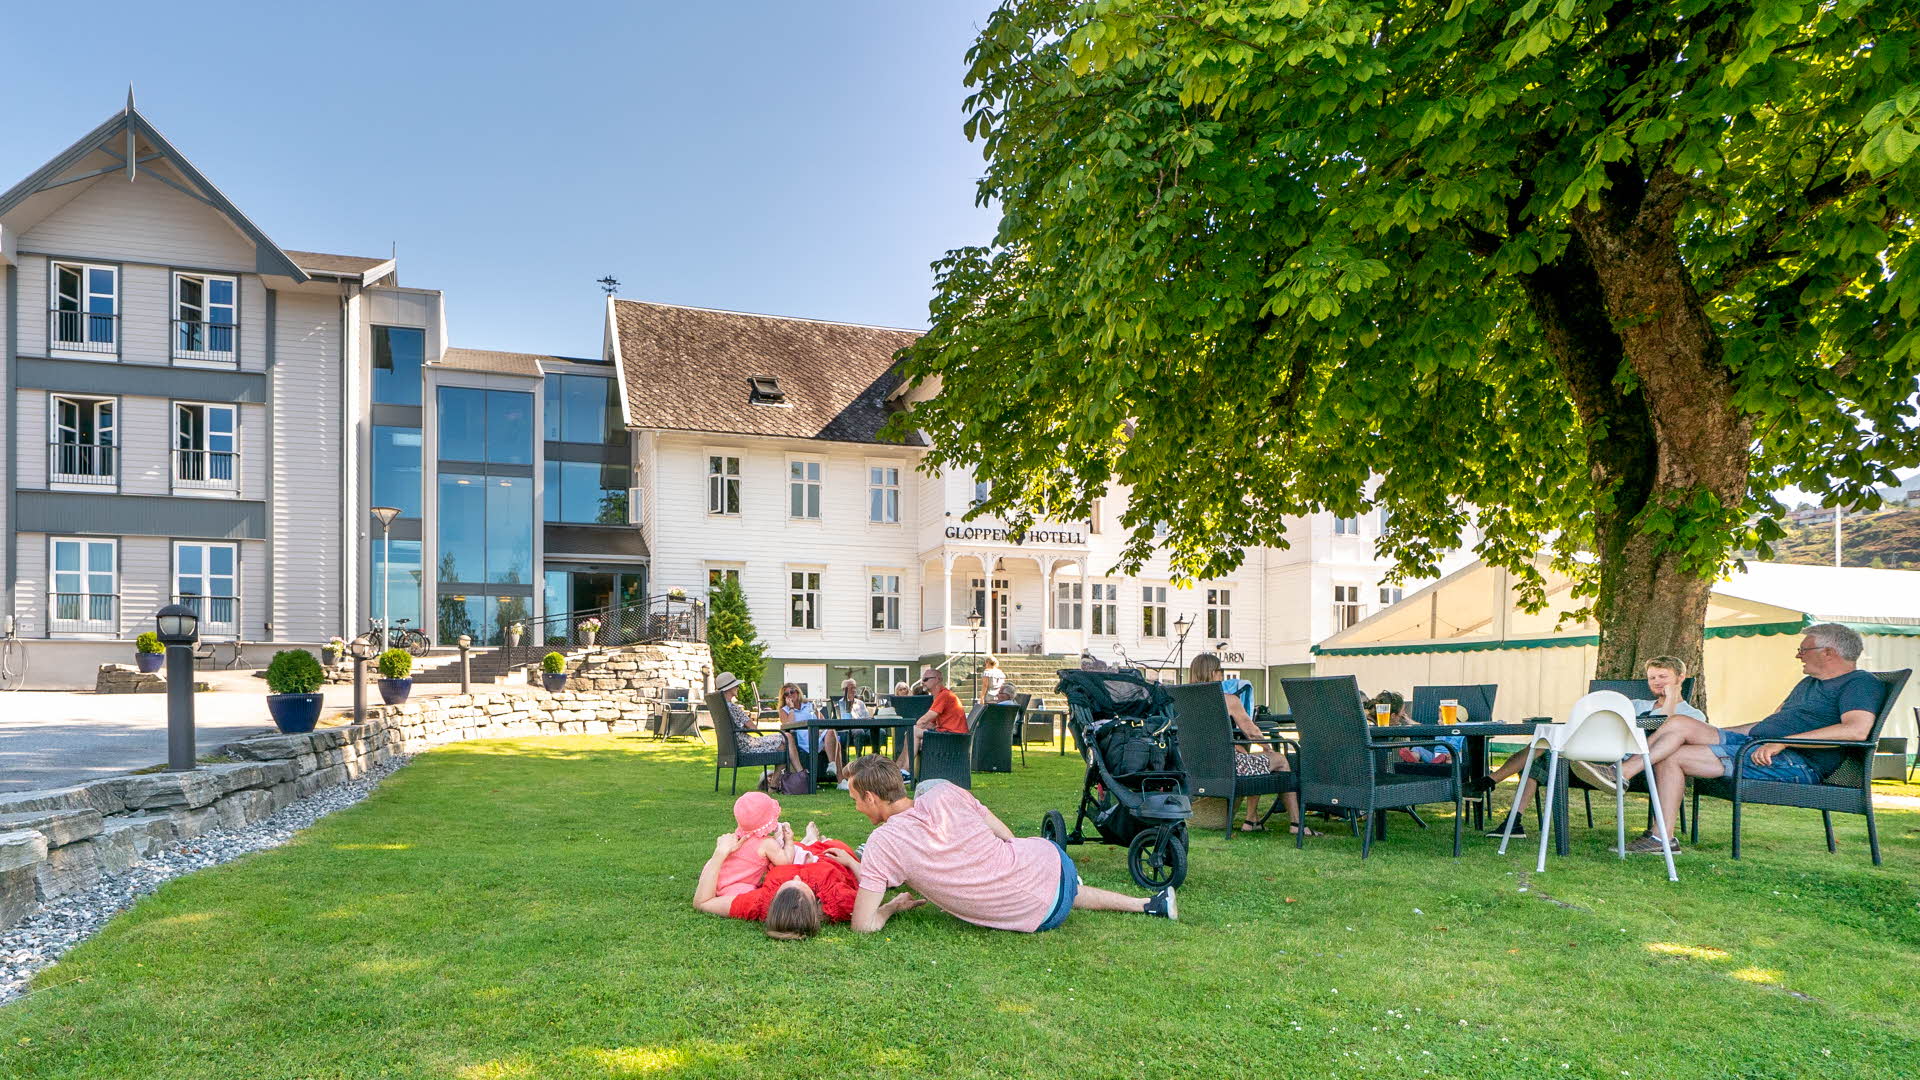 Blick auf das Gloppen Hotell vom Garten aus. Eine Familie liegt im Gras, andere Gäste sitzen an Gartentischen. 